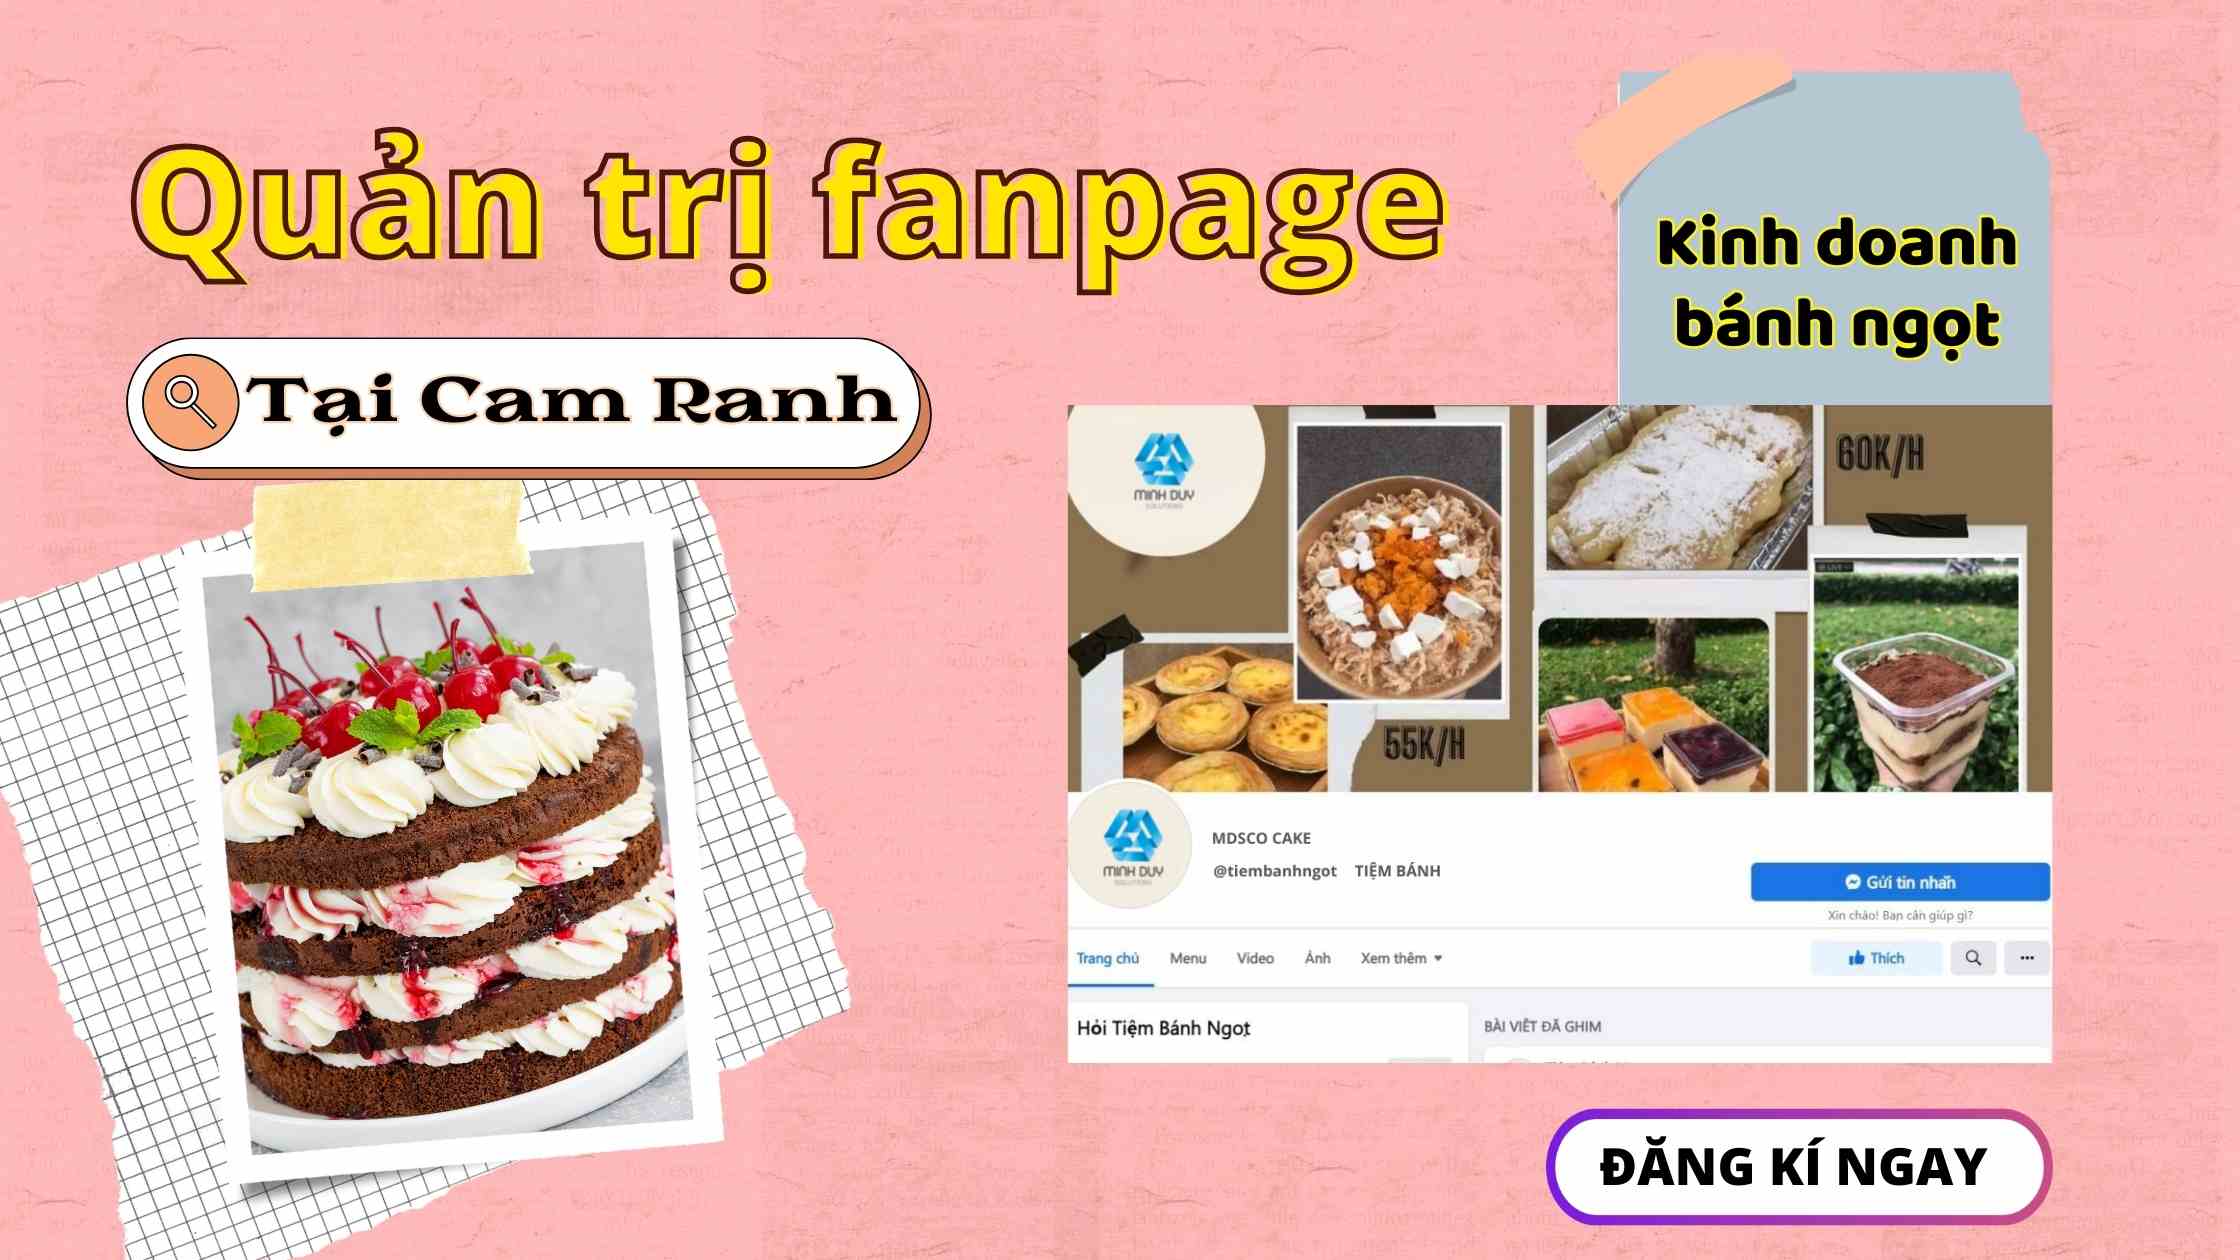 Dịch vụ chăm sóc fanpage bán bánh ngọt tại Cam Ranh